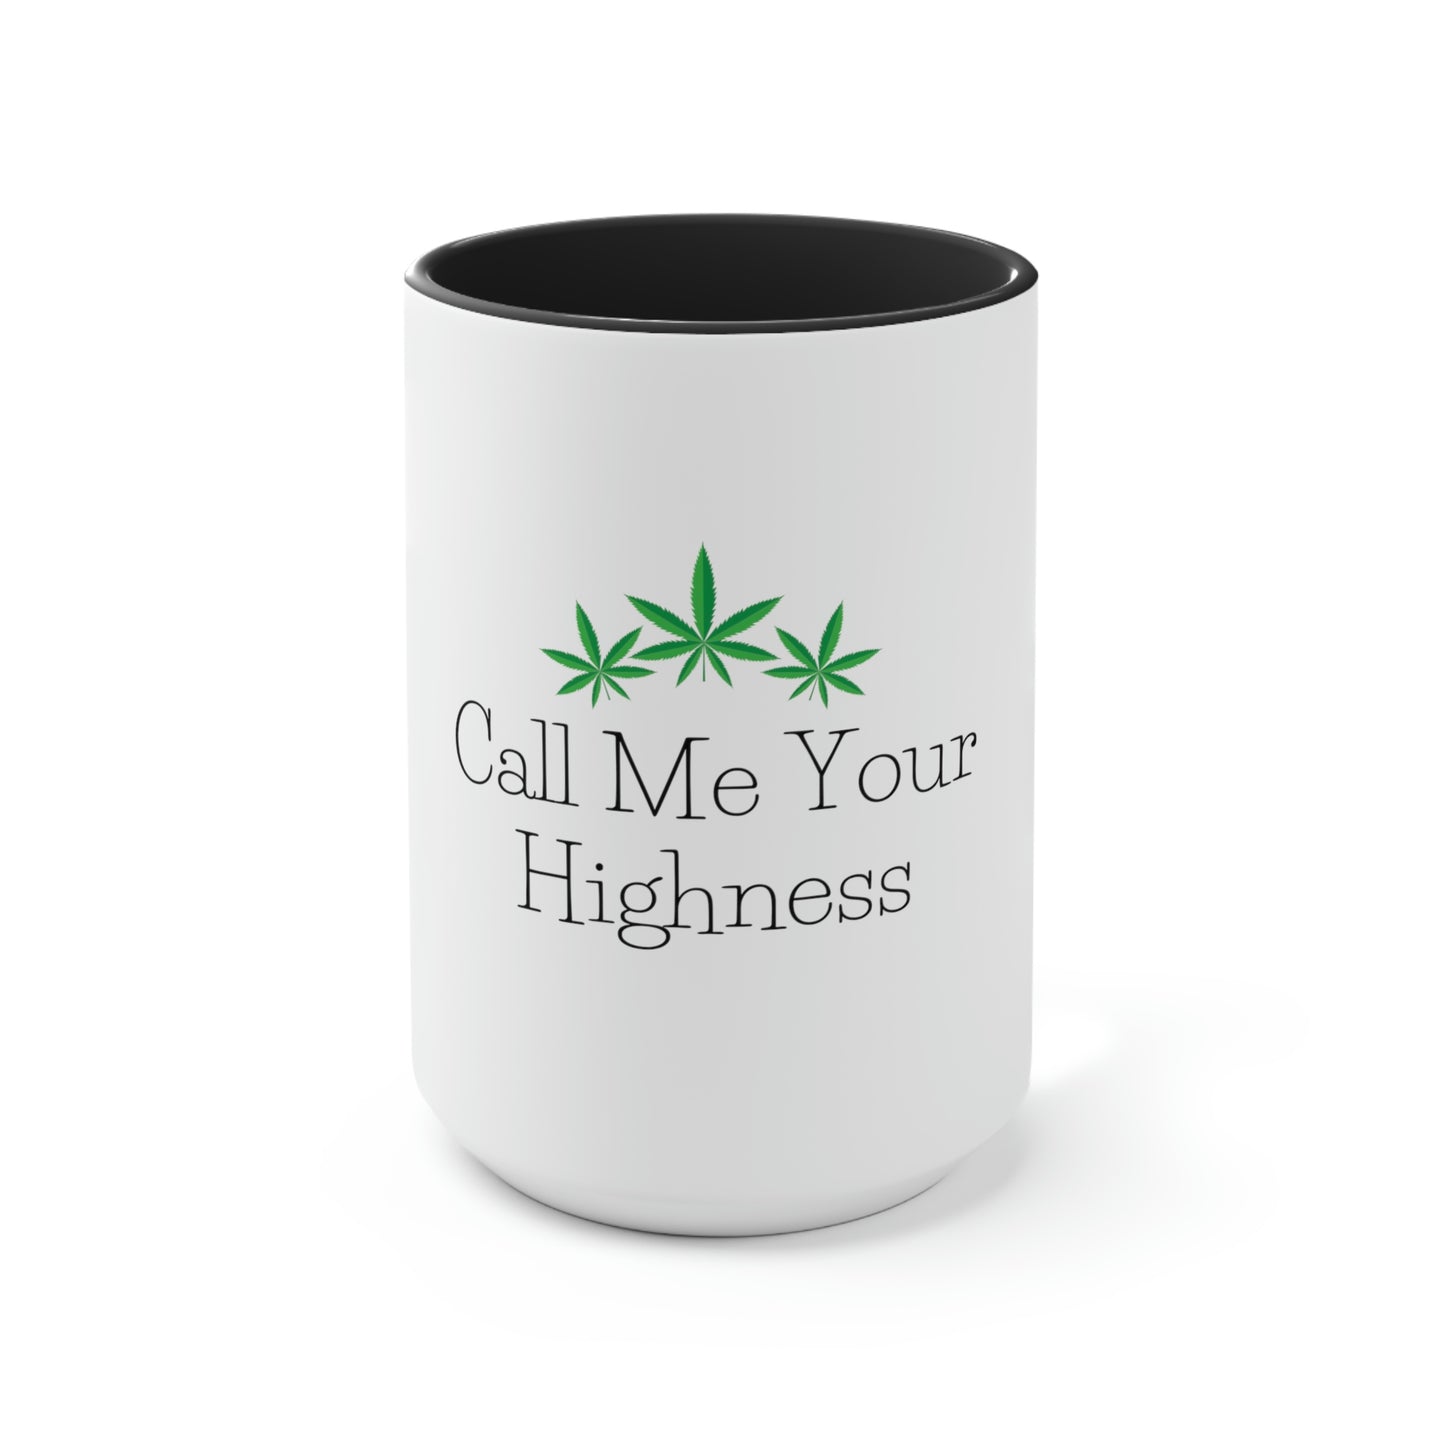 Call Me Your Highness Coffee Mug, "call me your highness coffee mug.